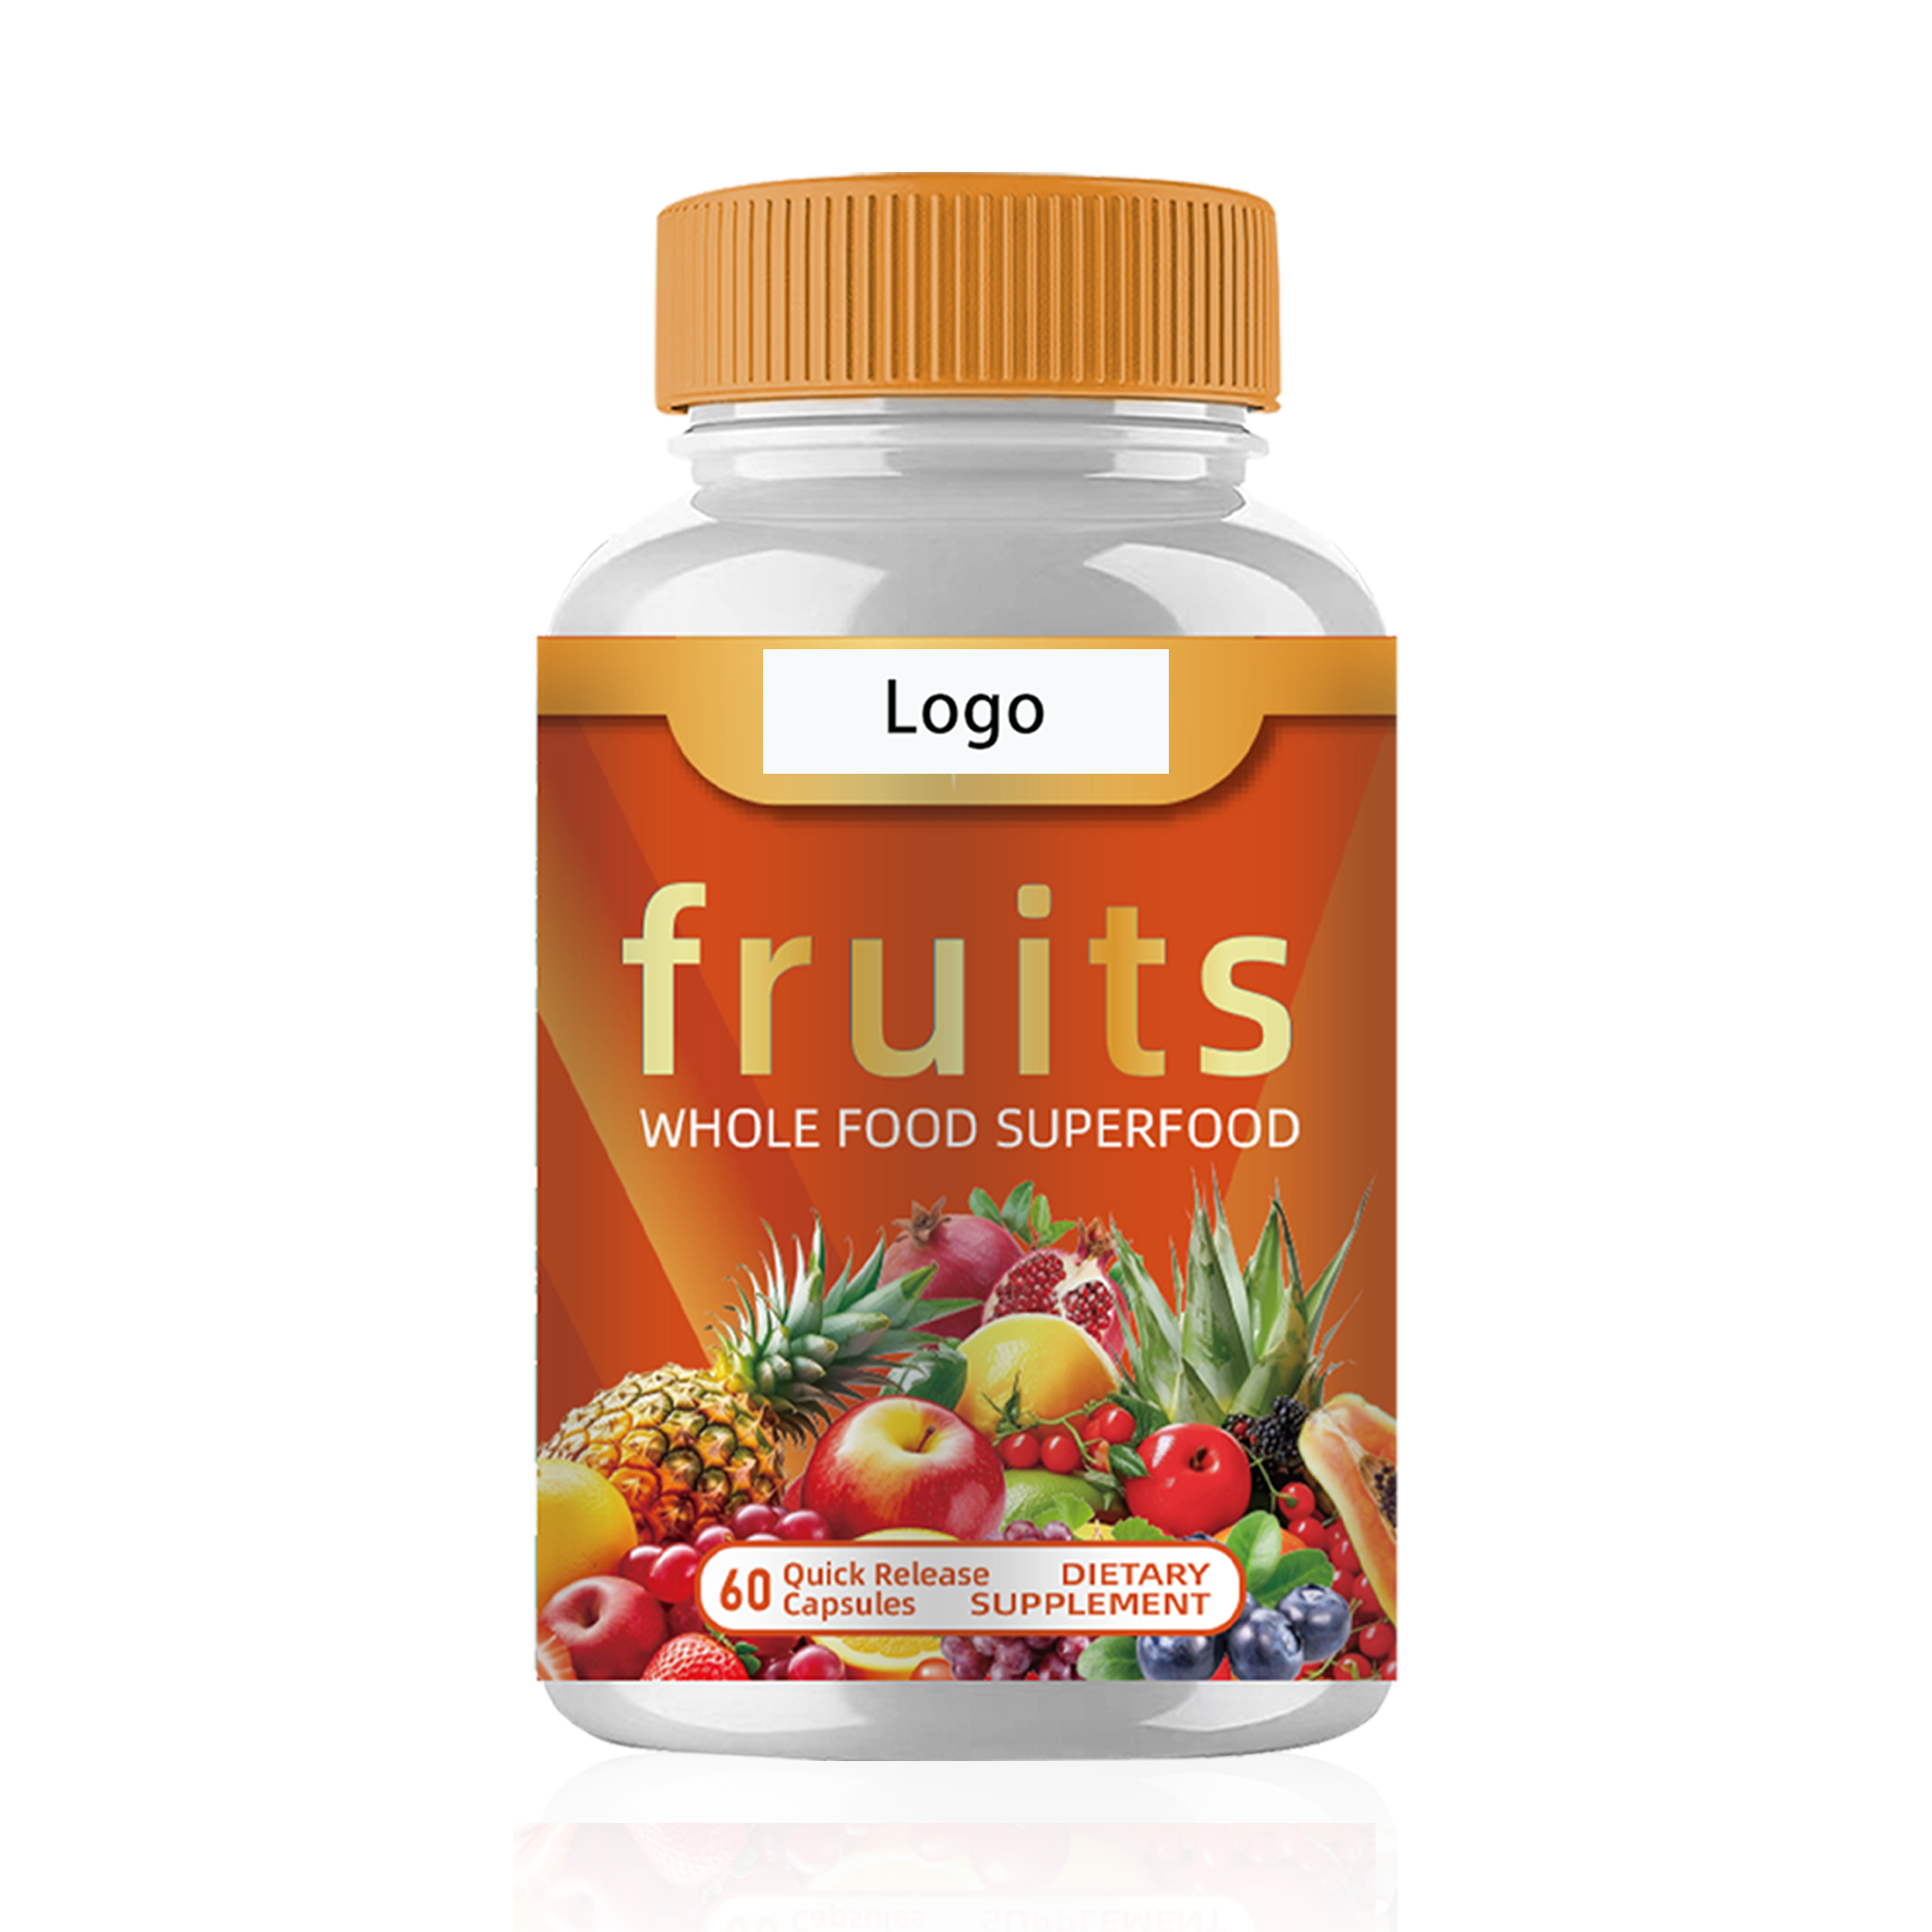 Fruit capsules